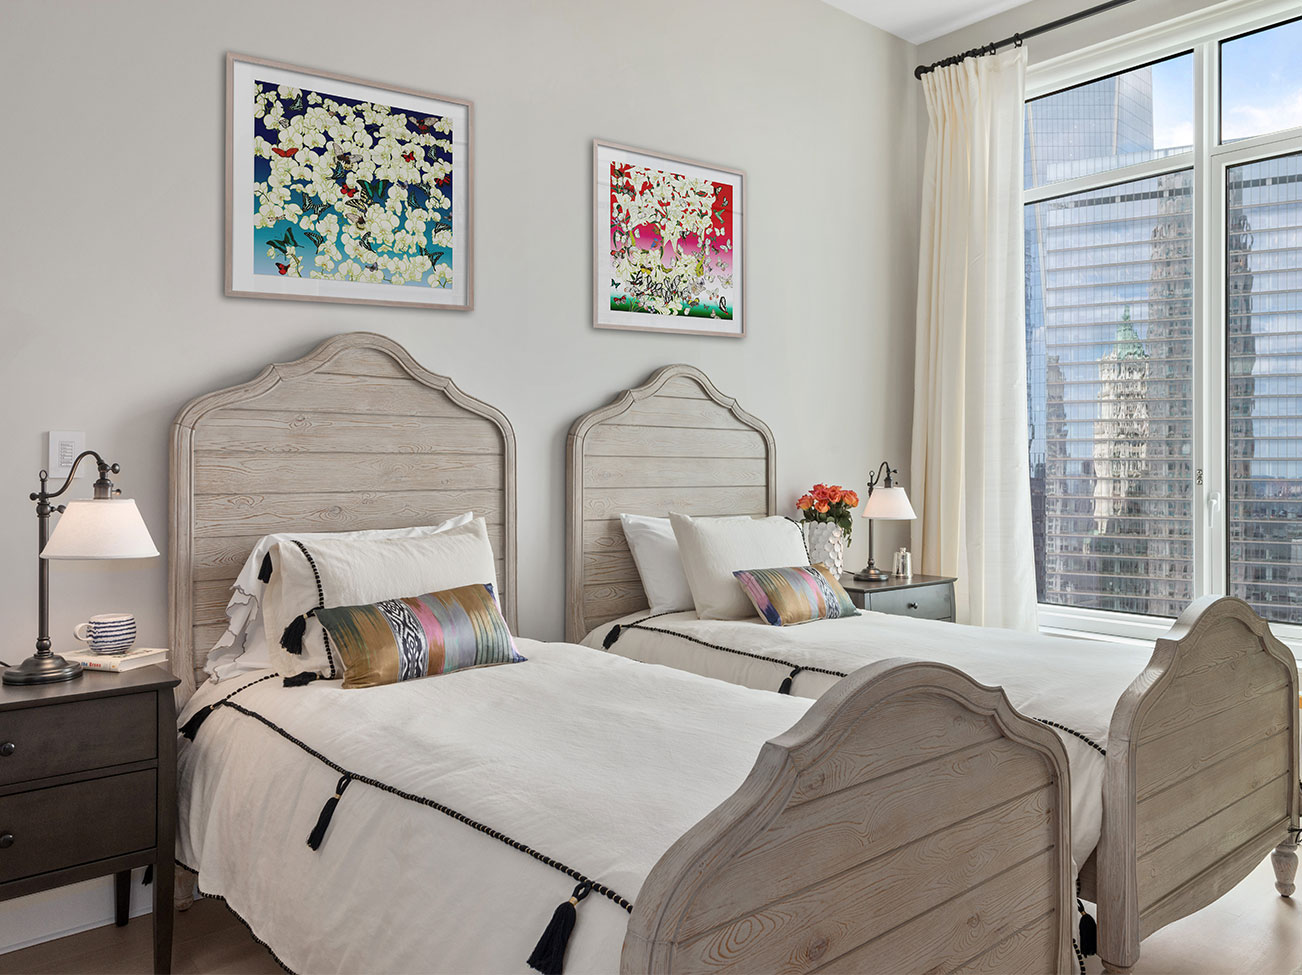 Chambre à coucher avec lits jumeaux, œuvres d’art au-dessus des têtes de lit, murs gris pâle et vue sur la ville au travers d’un voilage et de rideaux blancs.